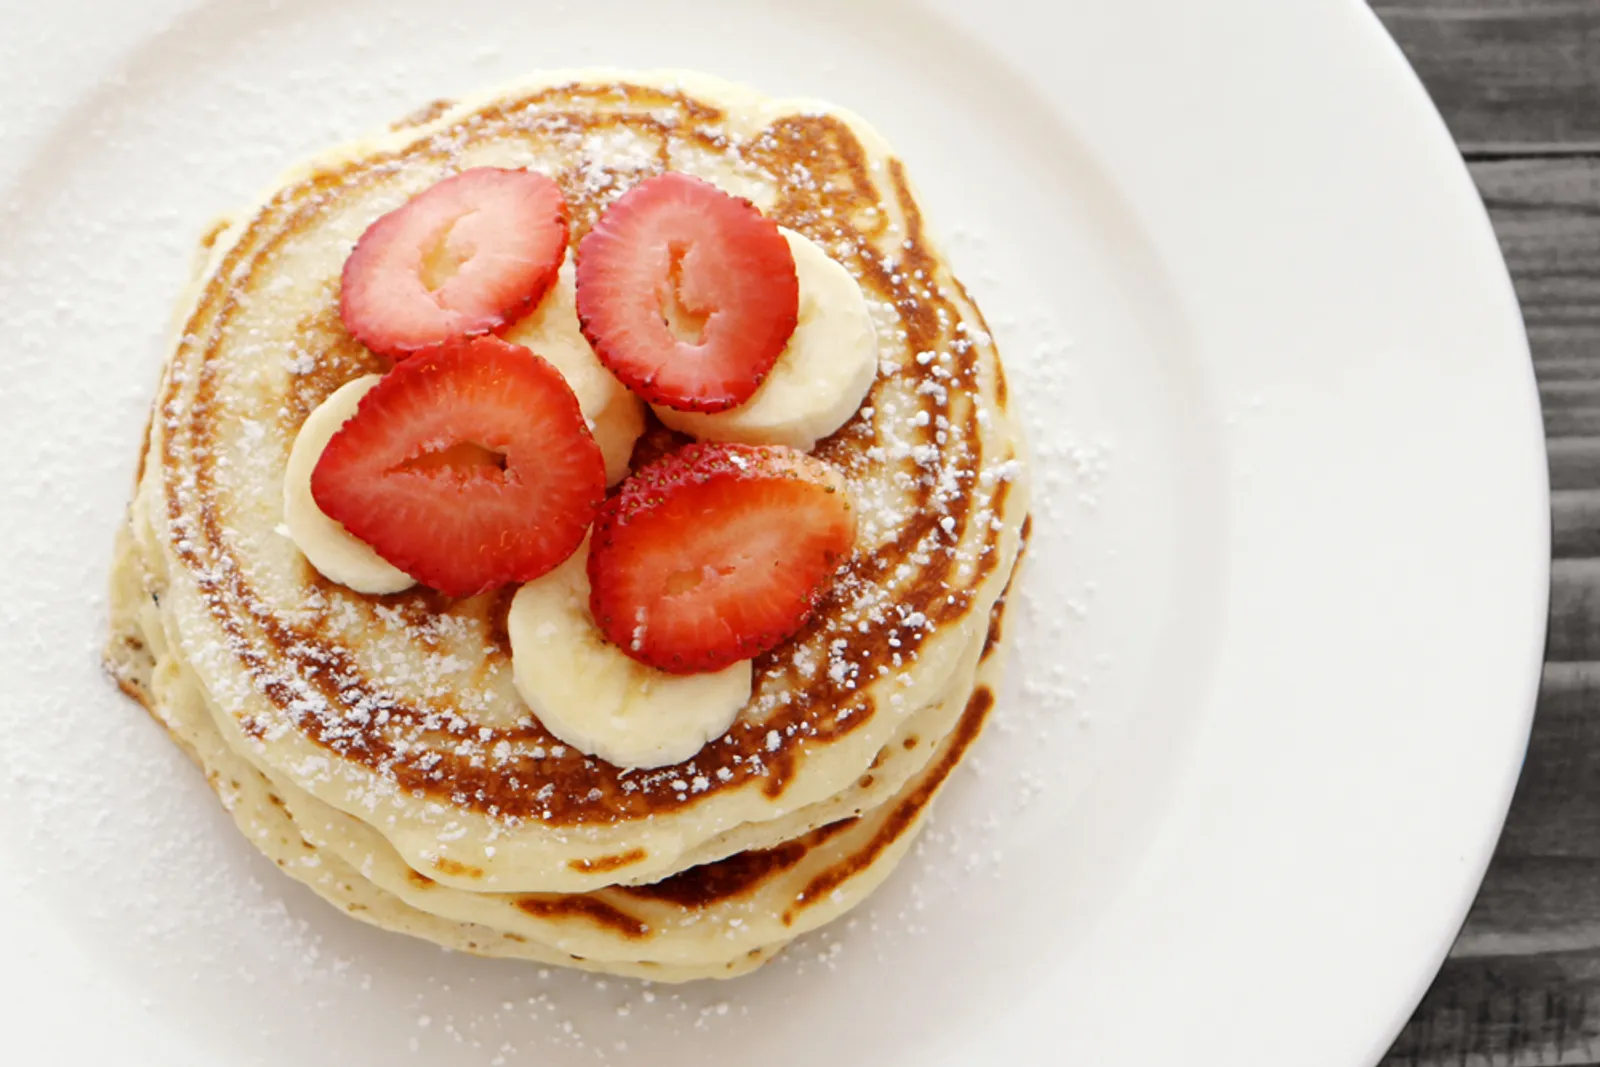 Inilah Resep Praktis dan Menyehatkan Membuat Pancake untuk Menu Sarapan Kamu